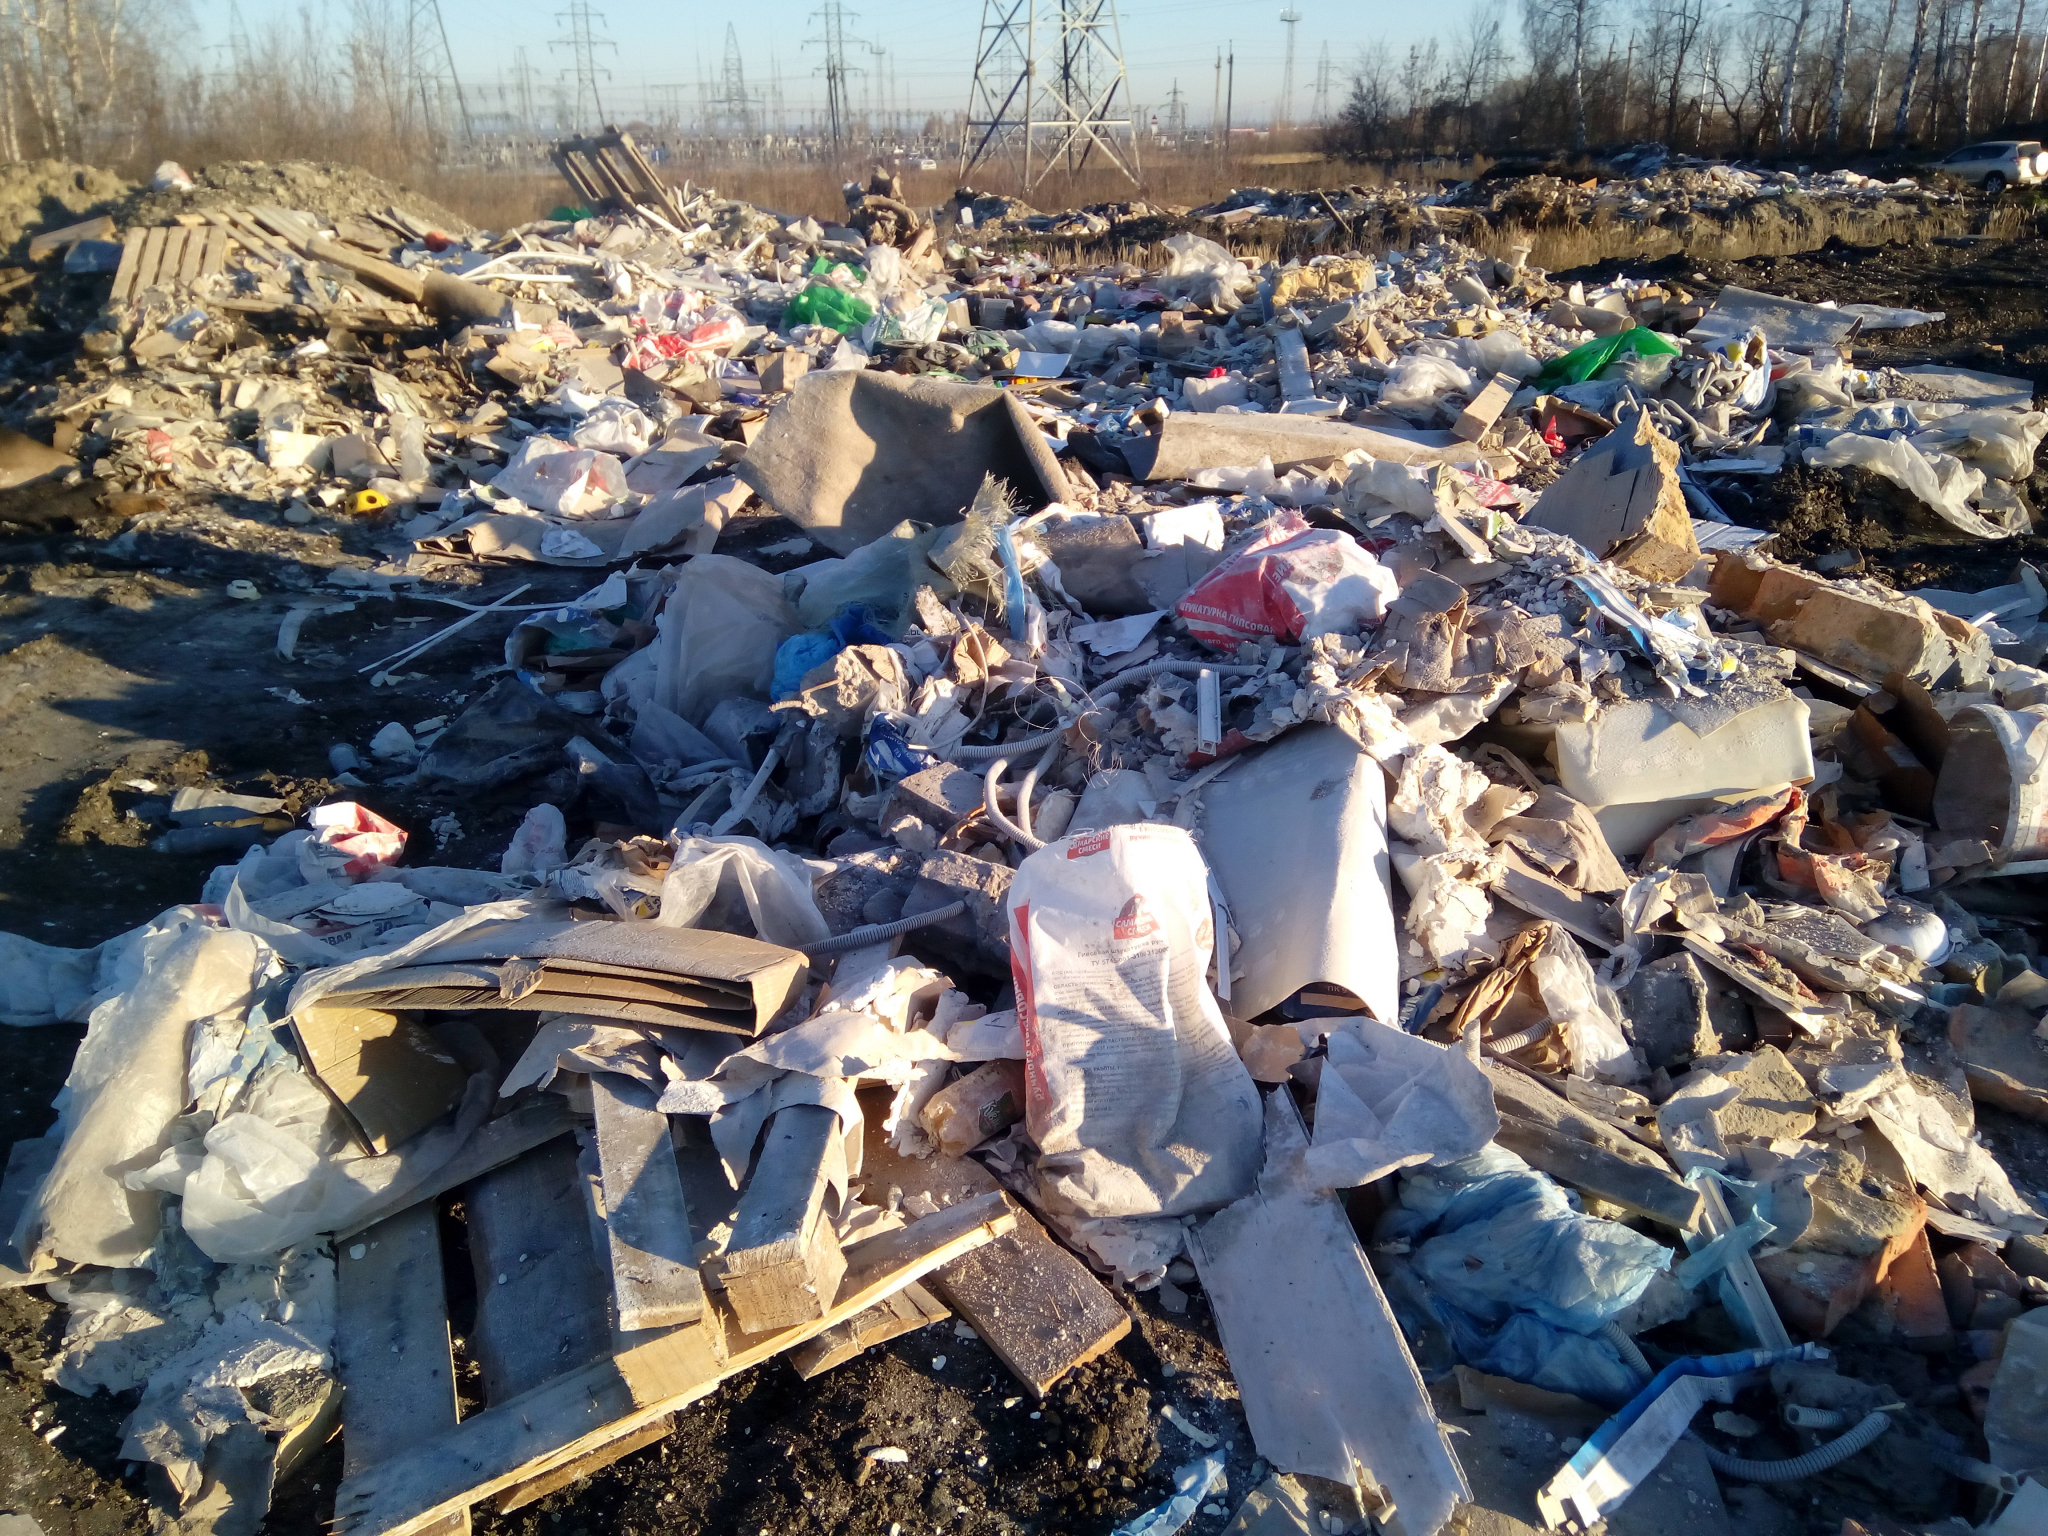 "Чад от свалки доносится до города": пензенские общественники нашли горы тлеющего мусора